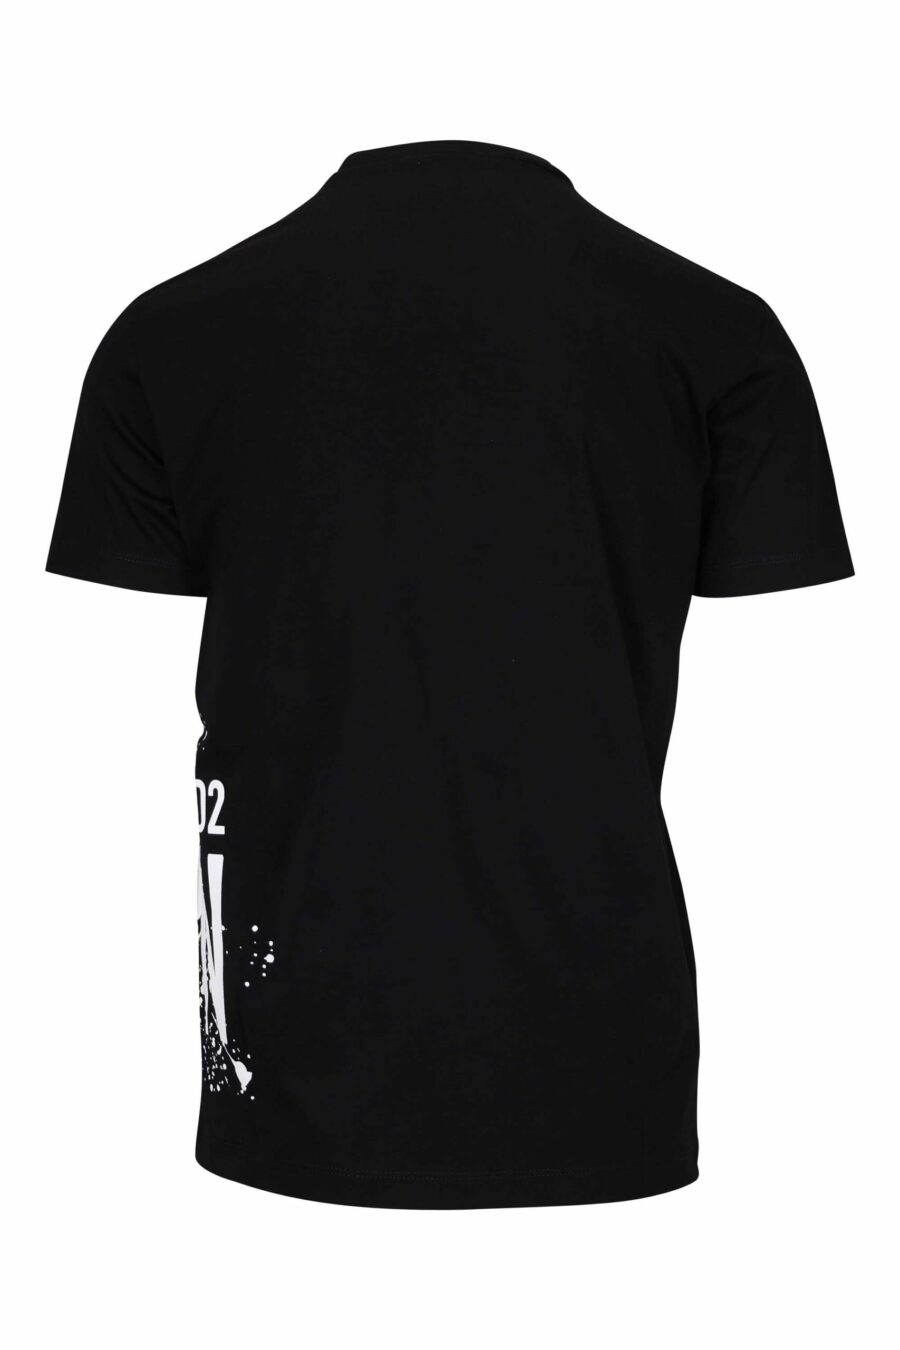 Schwarzes T-Shirt mit "icon splash" Maxilogo darunter - 8054148293758 1 skaliert